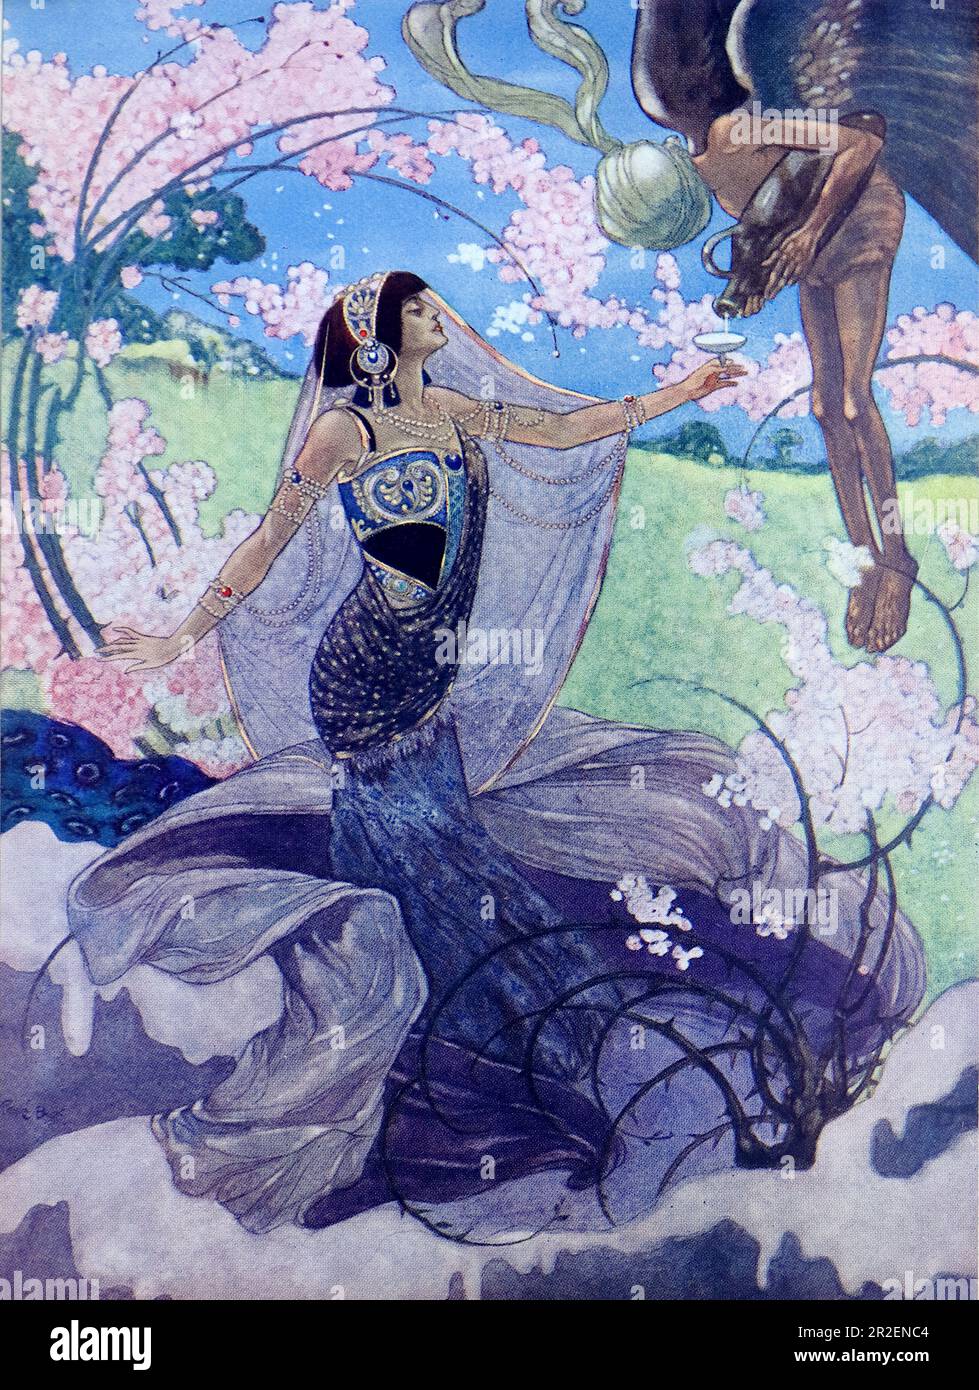 Von Rene Bull Farbe: Eine Dame in fließenden Kleidungsstücken, die ein Glas hält, das von einem Engel mit einer großen Urne gefüllt wird. Aus Richtung Rubaiyat von Omar Khayyam: Stockfoto